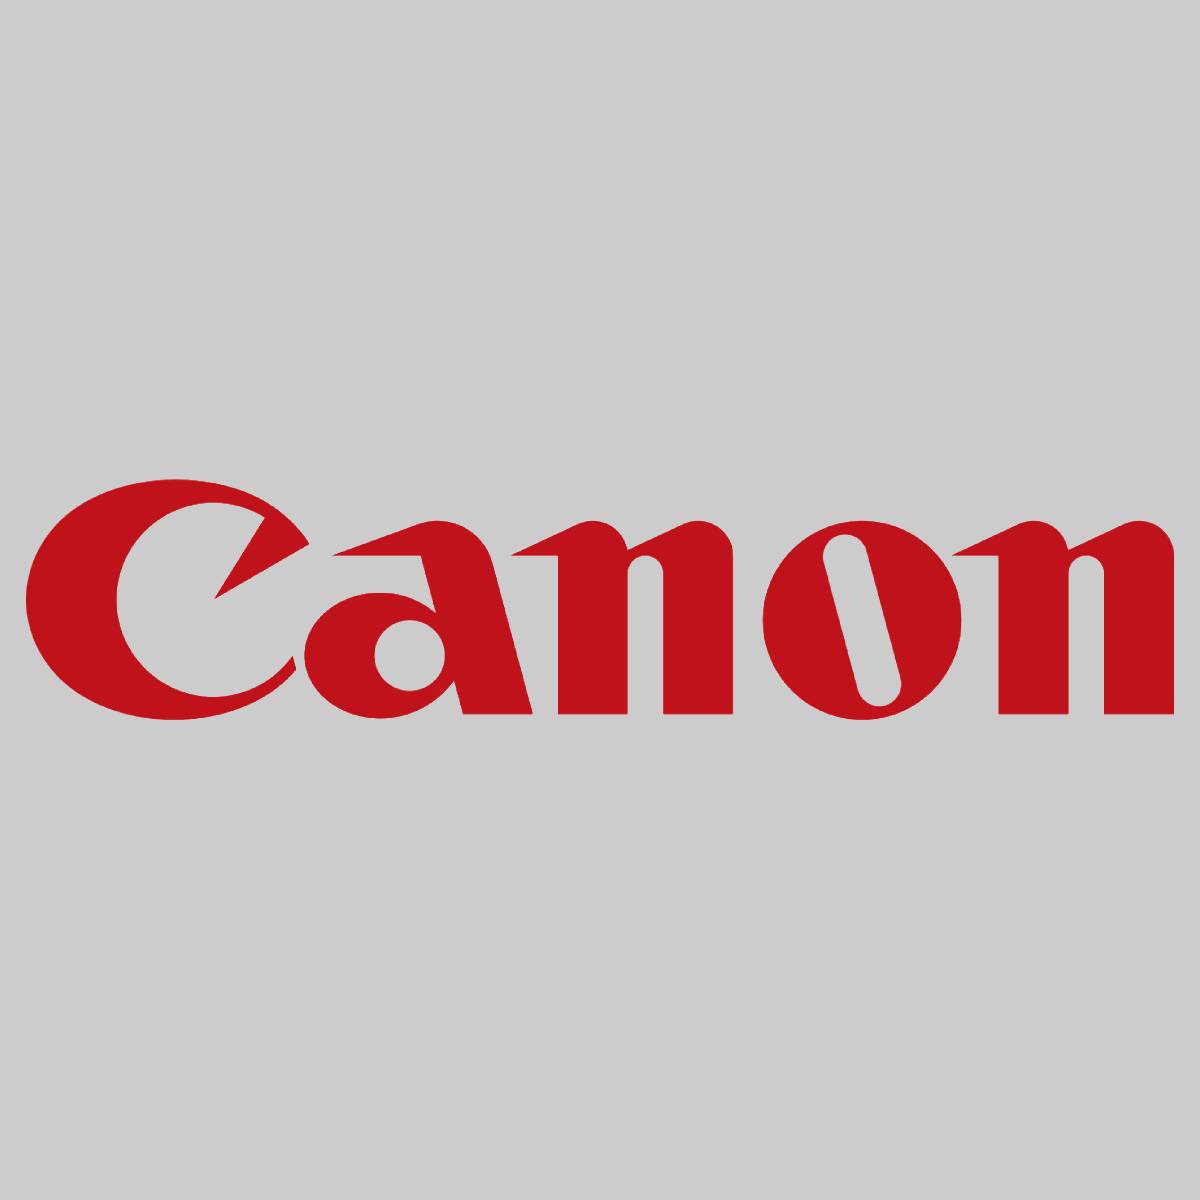 "Original Canon C-EXV7 Toner Black 7814A002 für iR1210 1230 1270F 1570F NEU